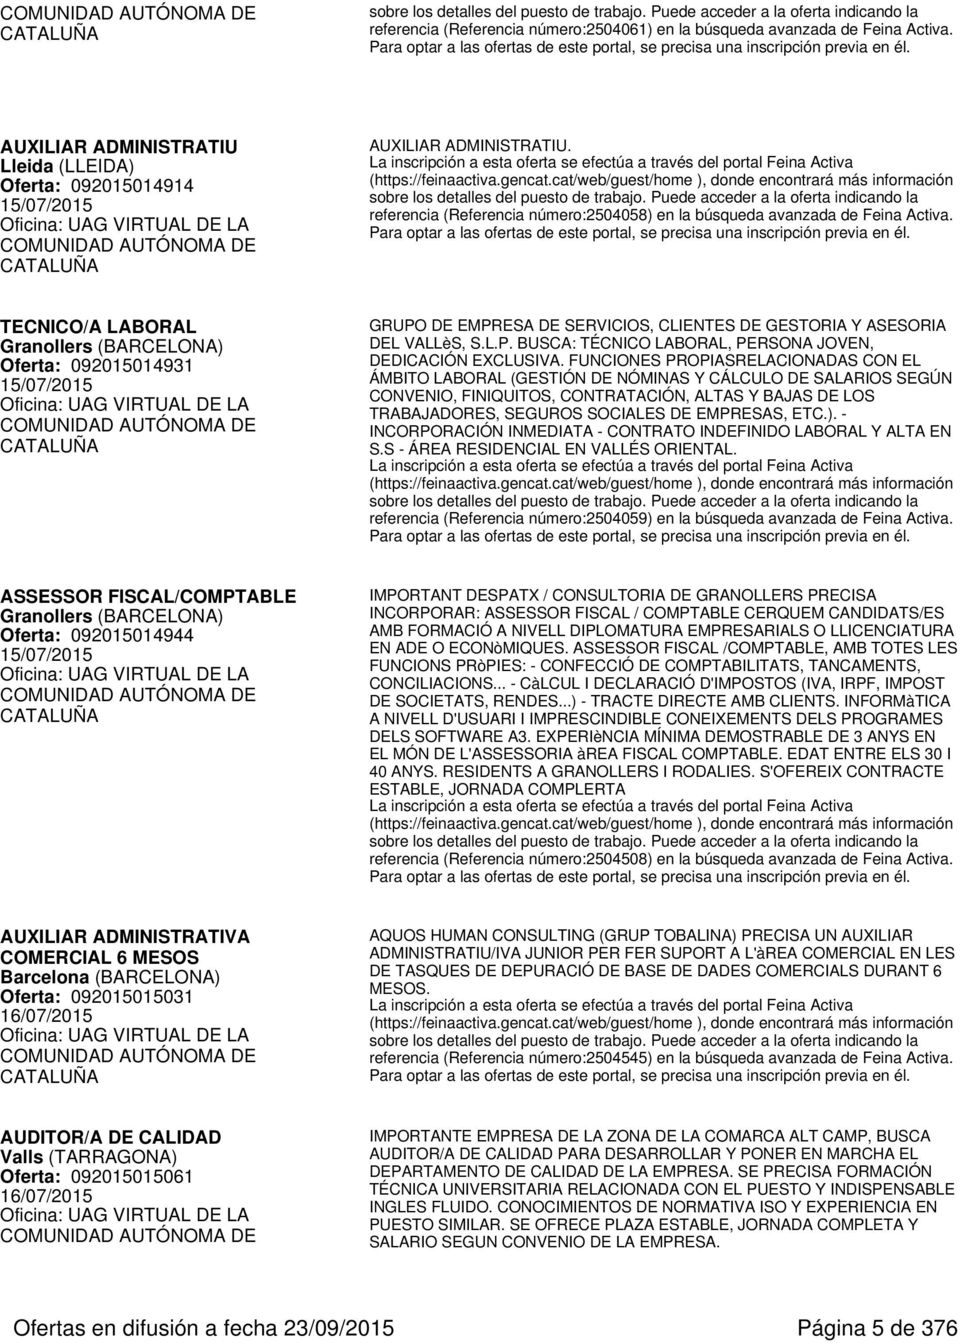 TECNICO/A LABORAL Granollers (BARCELONA) Oferta: 092015014931 15/07/2015 GRUPO DE EMPRESA DE SERVICIOS, CLIENTES DE GESTORIA Y ASESORIA DEL VALLèS, S.L.P. BUSCA: TÉCNICO LABORAL, PERSONA JOVEN, DEDICACIÓN EXCLUSIVA.